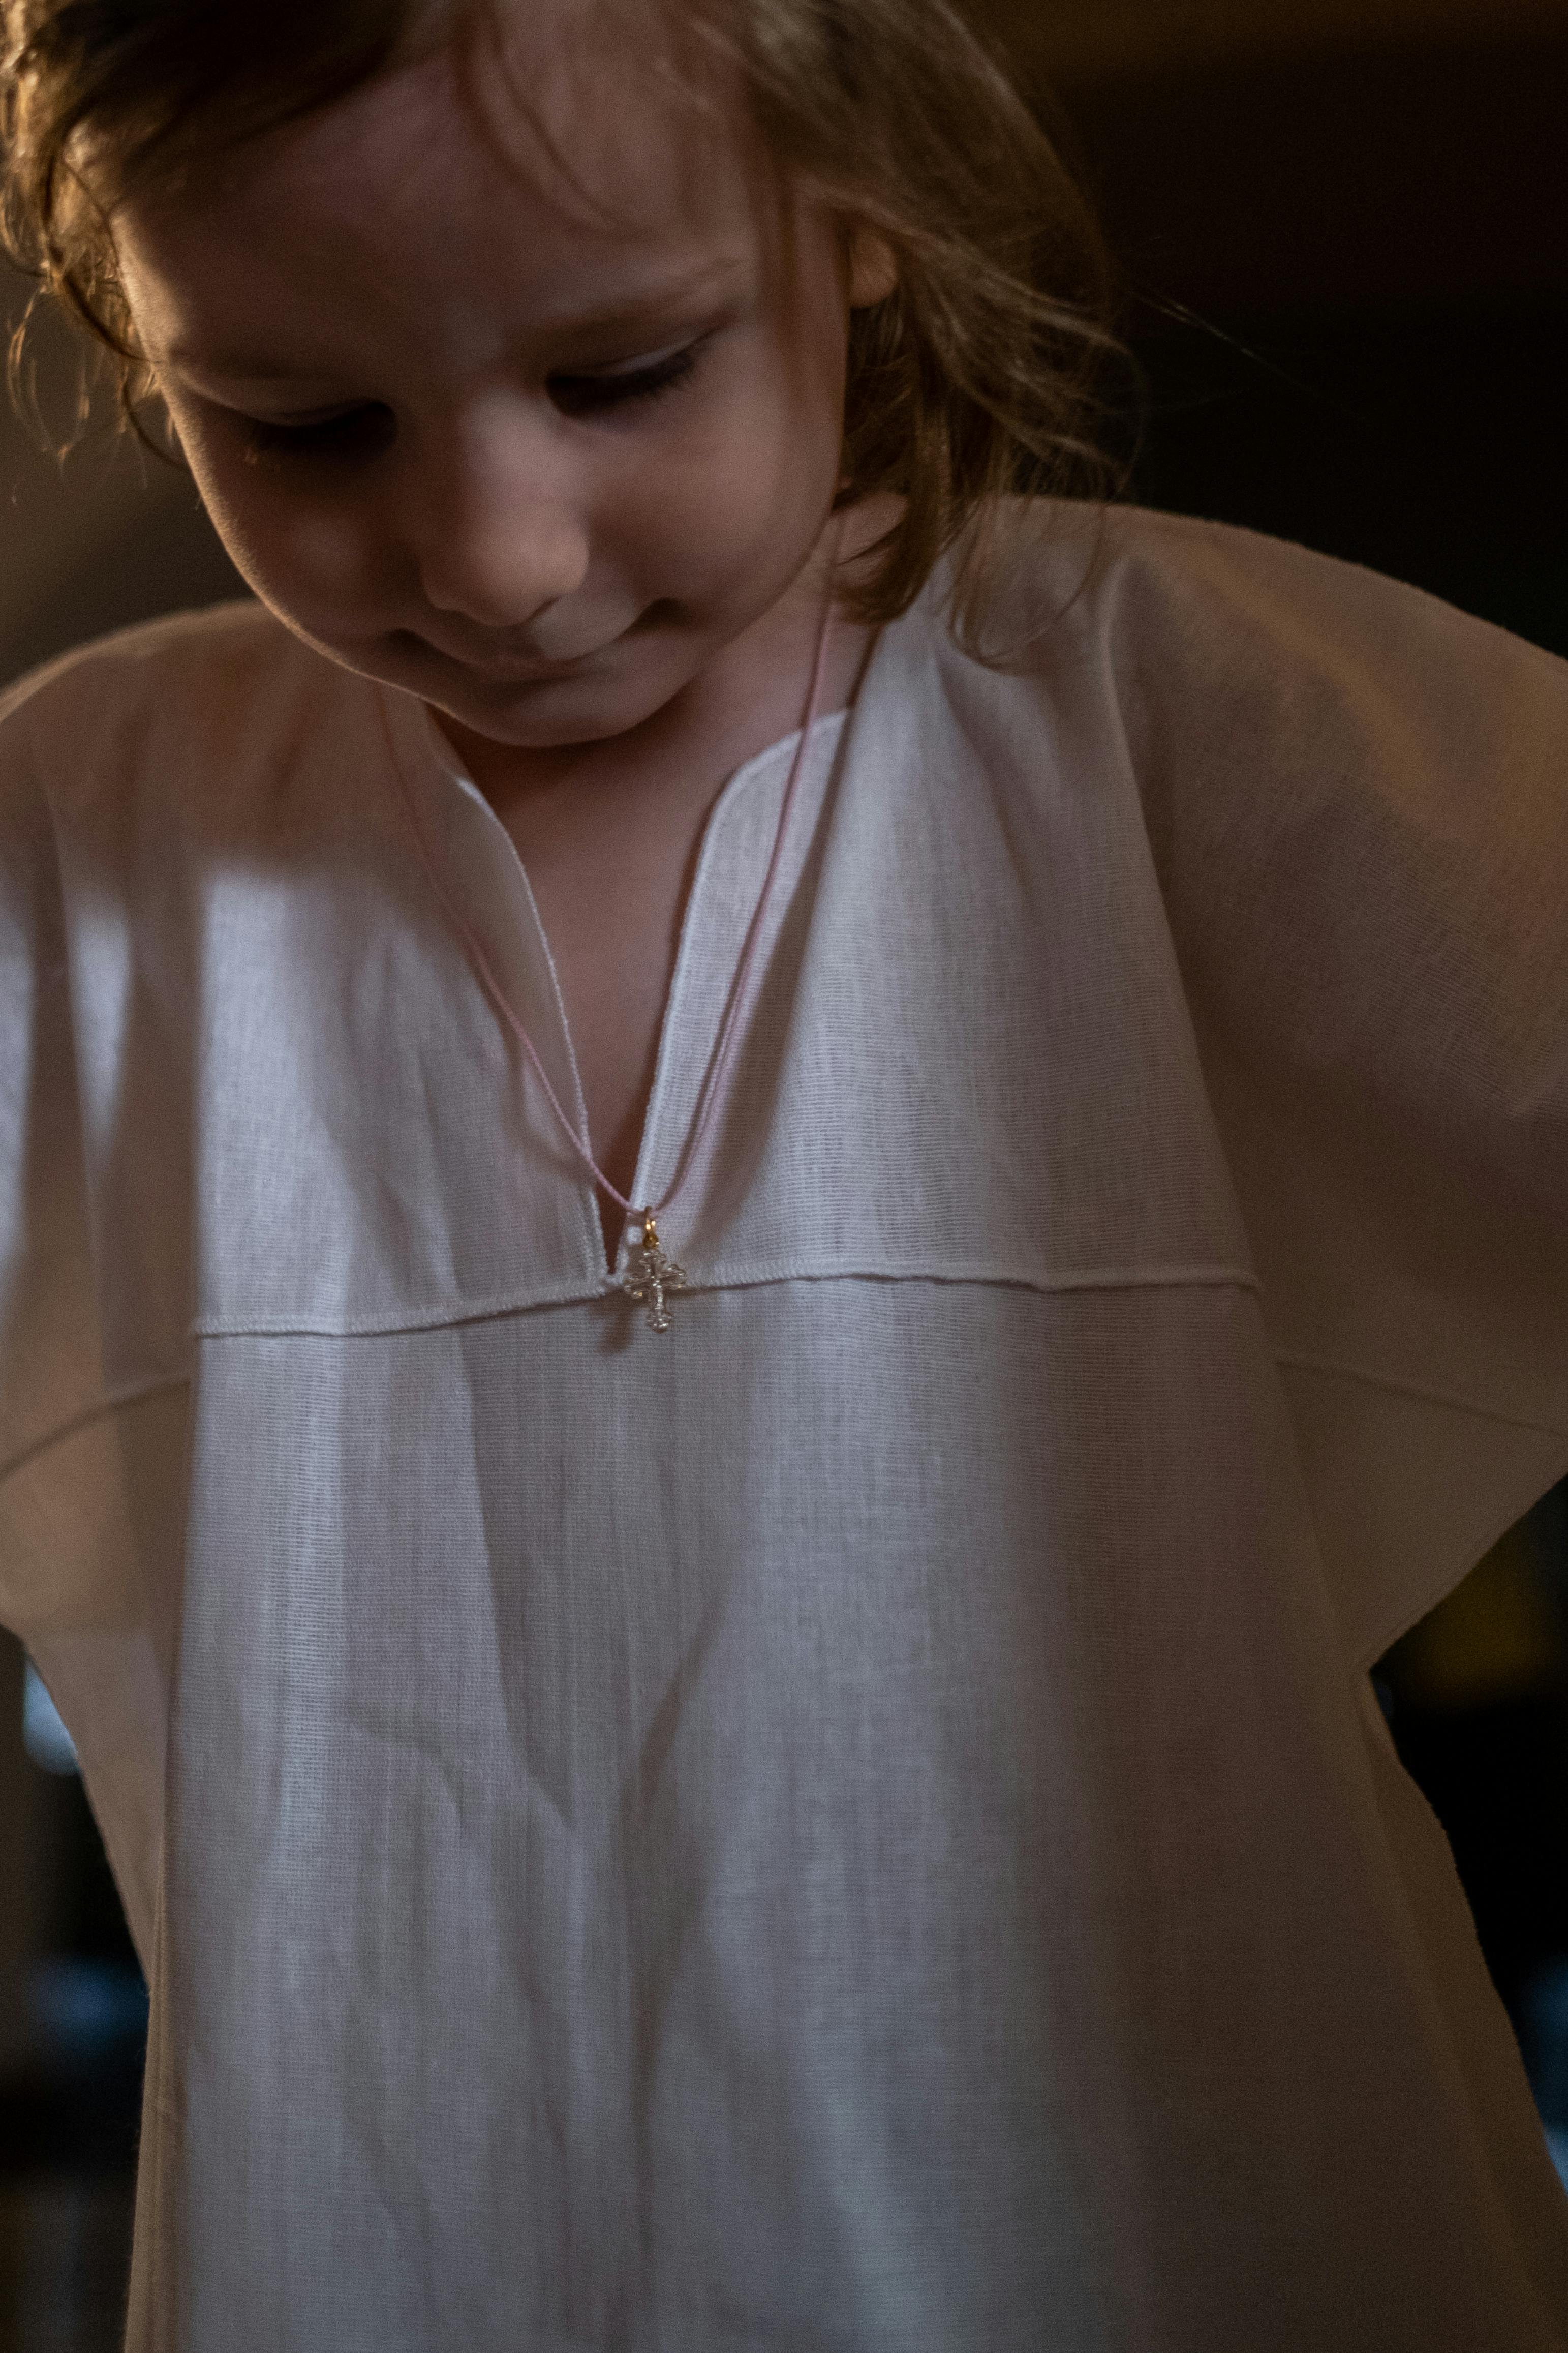 Une petite fille en robe blanche qui regarde vers le bas | Source : Pexels